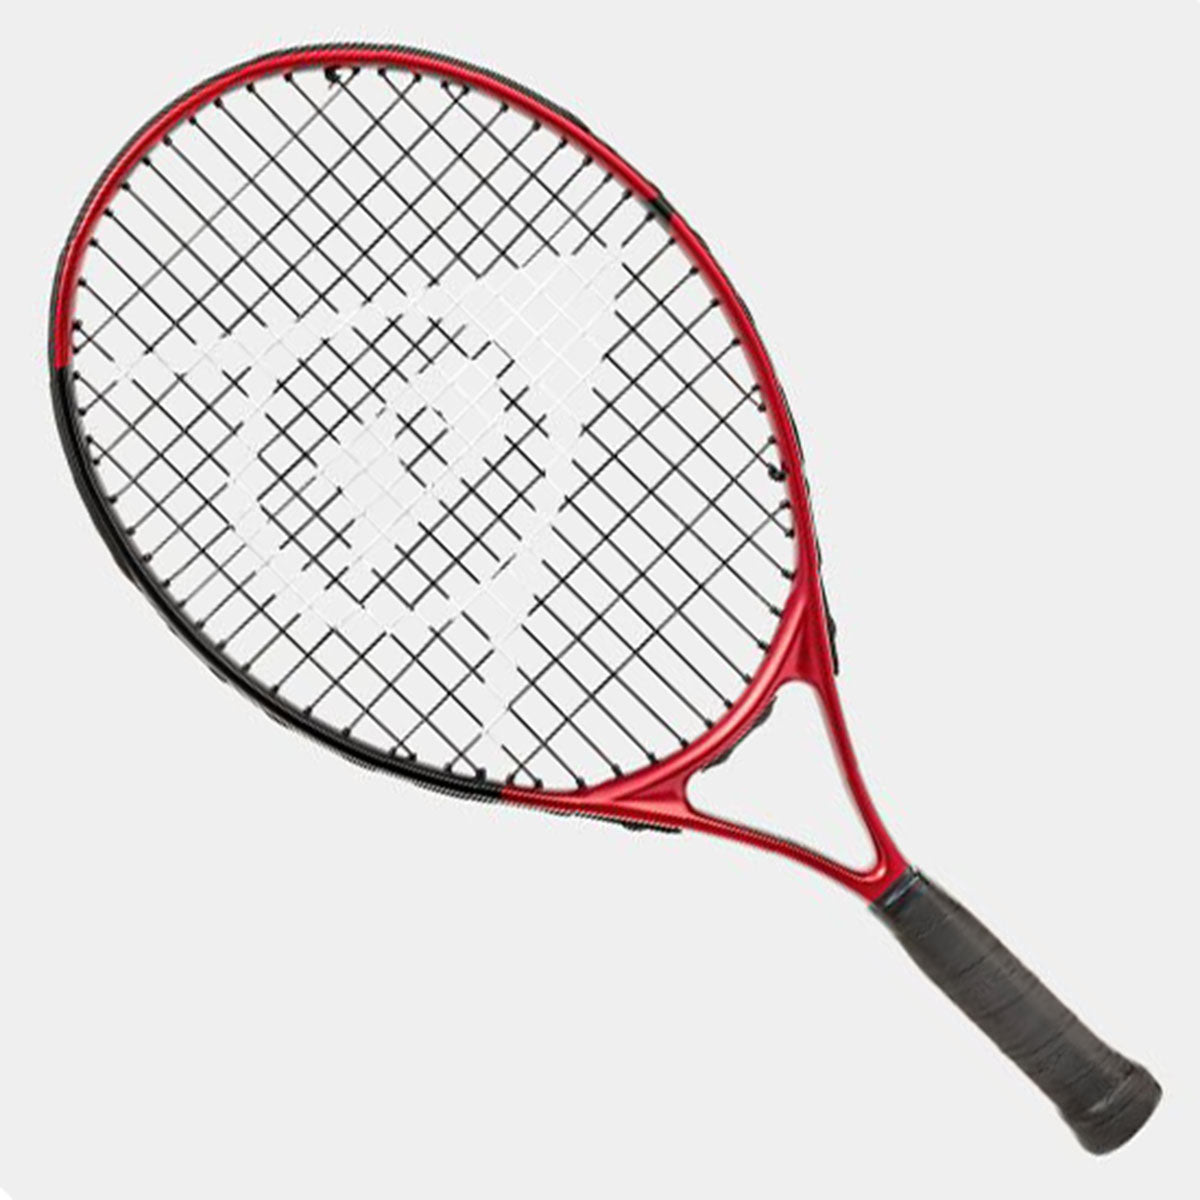 Dunlop CX Junior 21" Tennis Racket